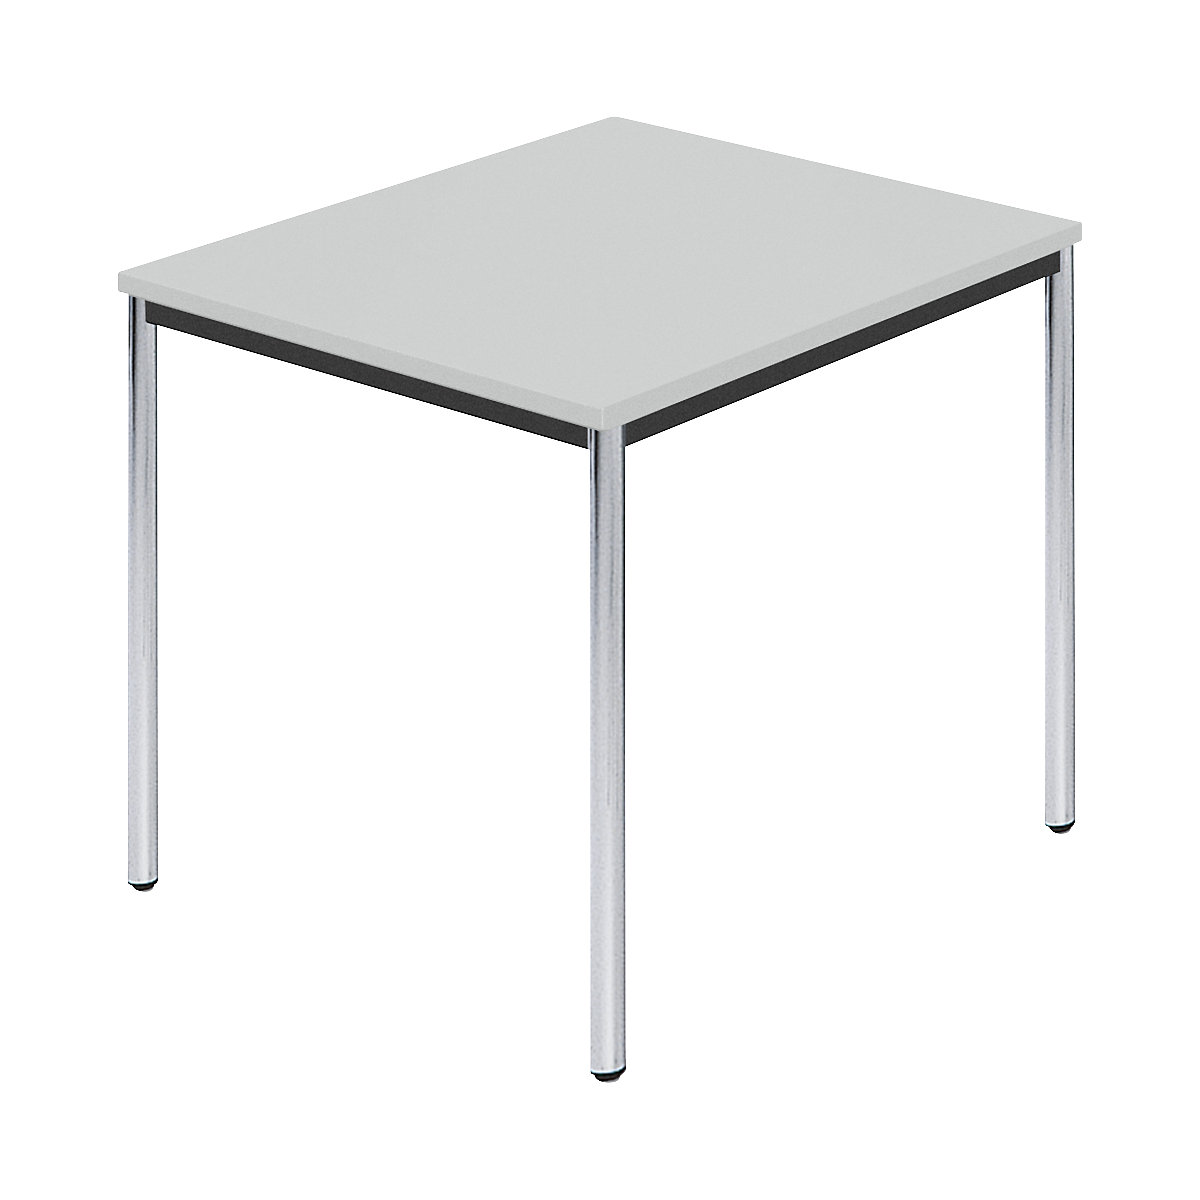 Table rectangulaire en tube rond chromé, l x p 800 x 800 mm, gris-6